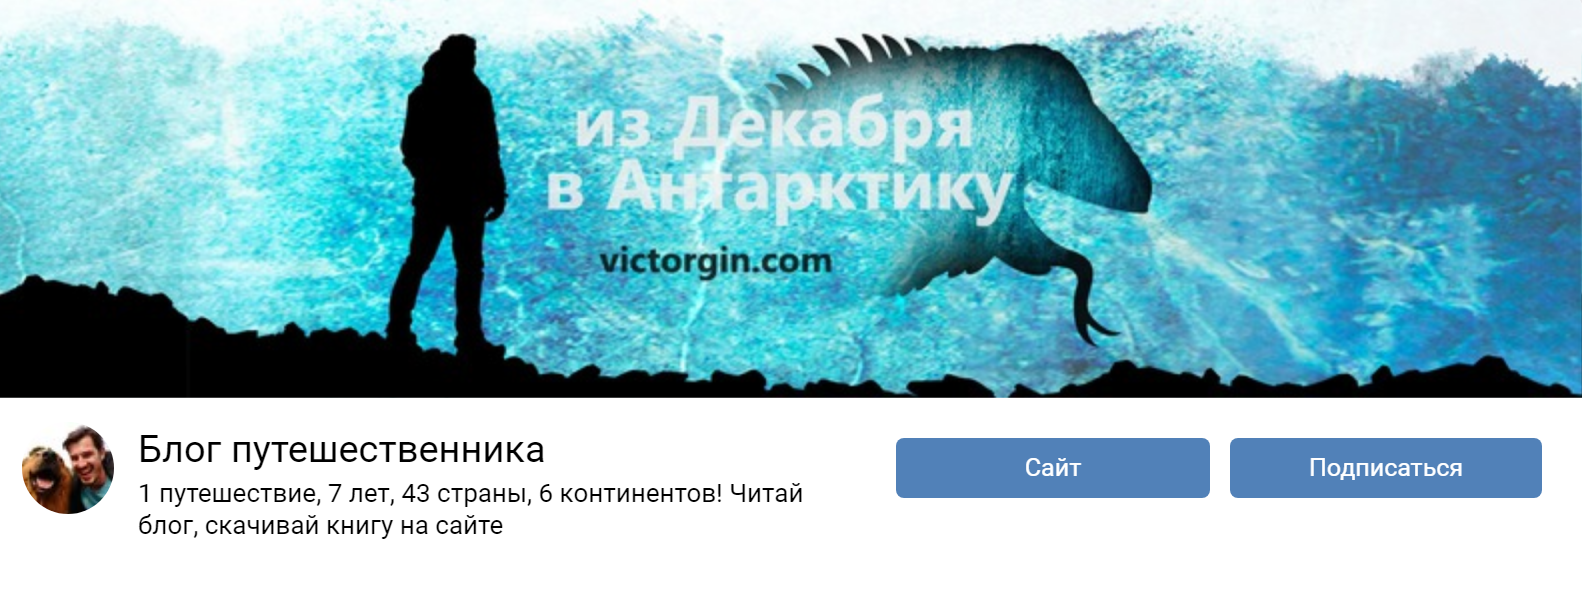 Группу во «Вконтакте» я оформил в стиле книги